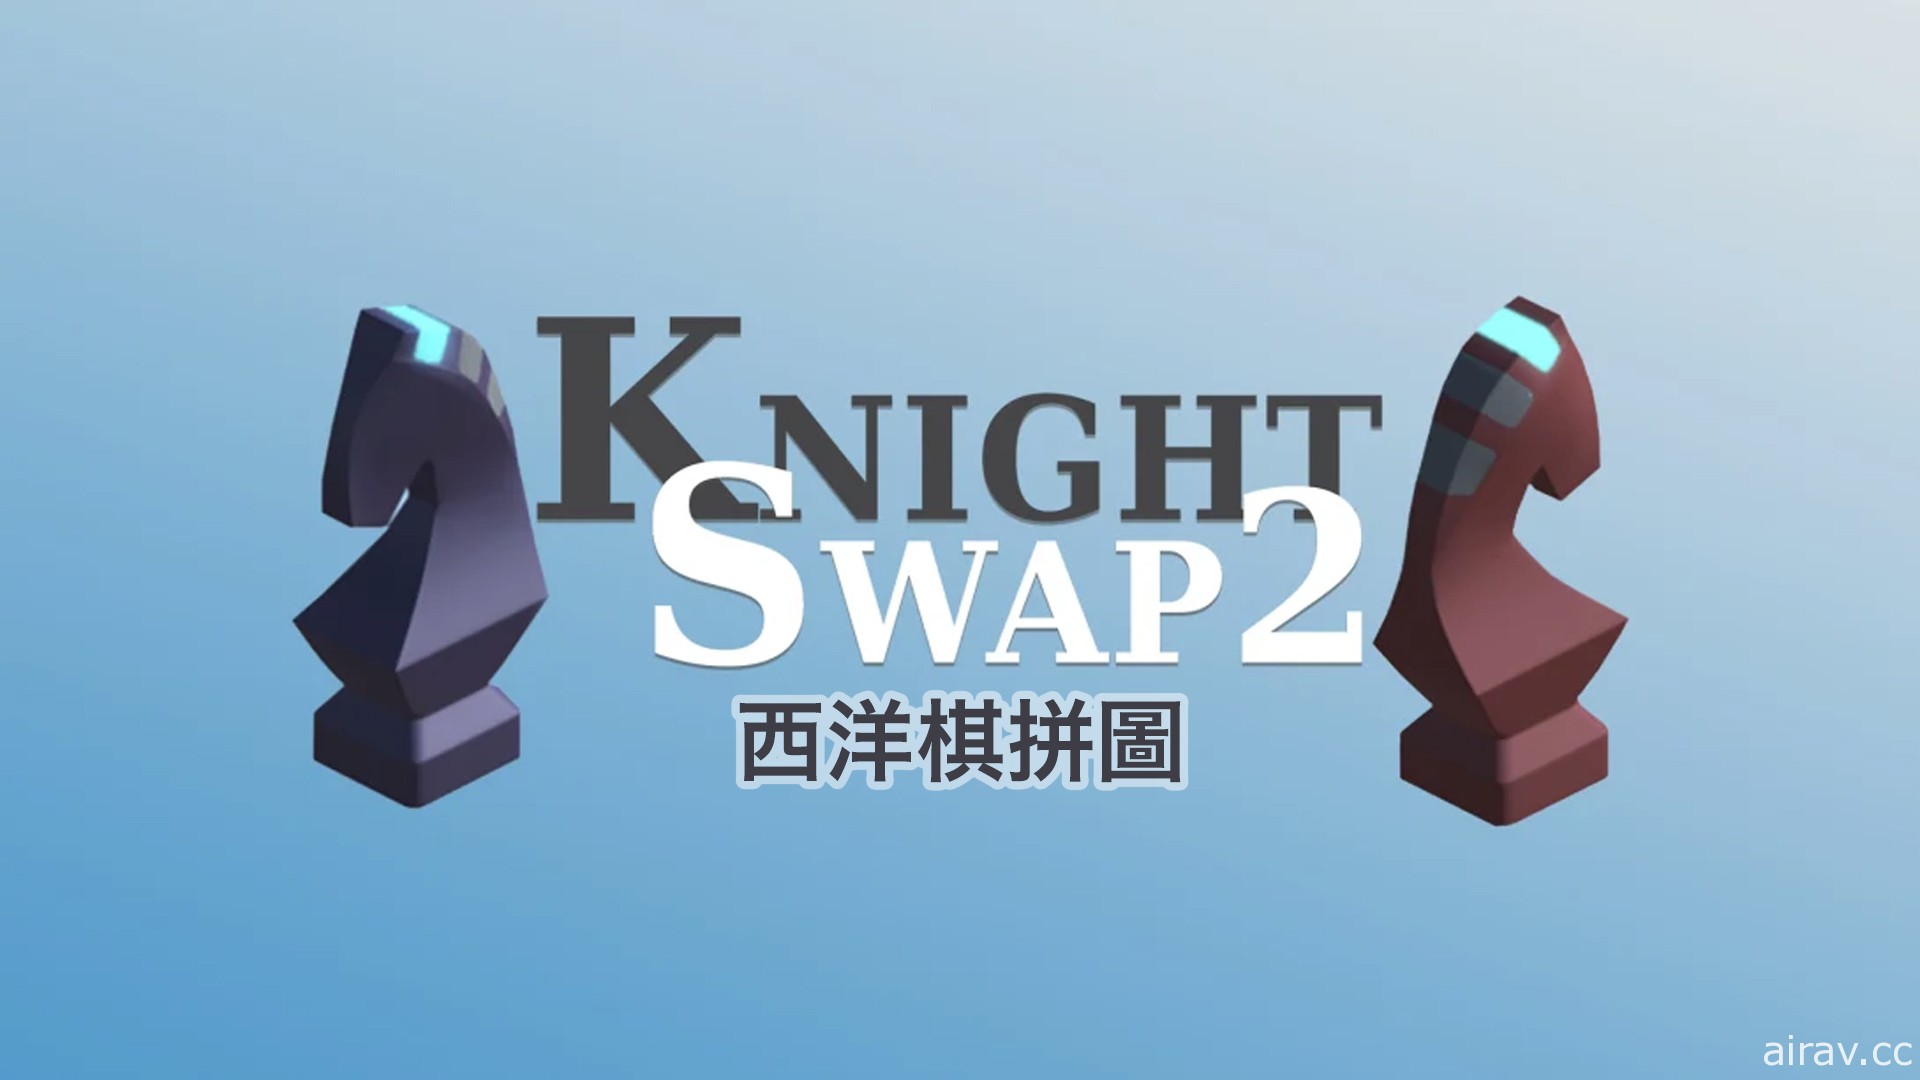 西洋棋解谜游戏《西洋棋解谜 Knight Swap 2》将于 8 月 26 日发售